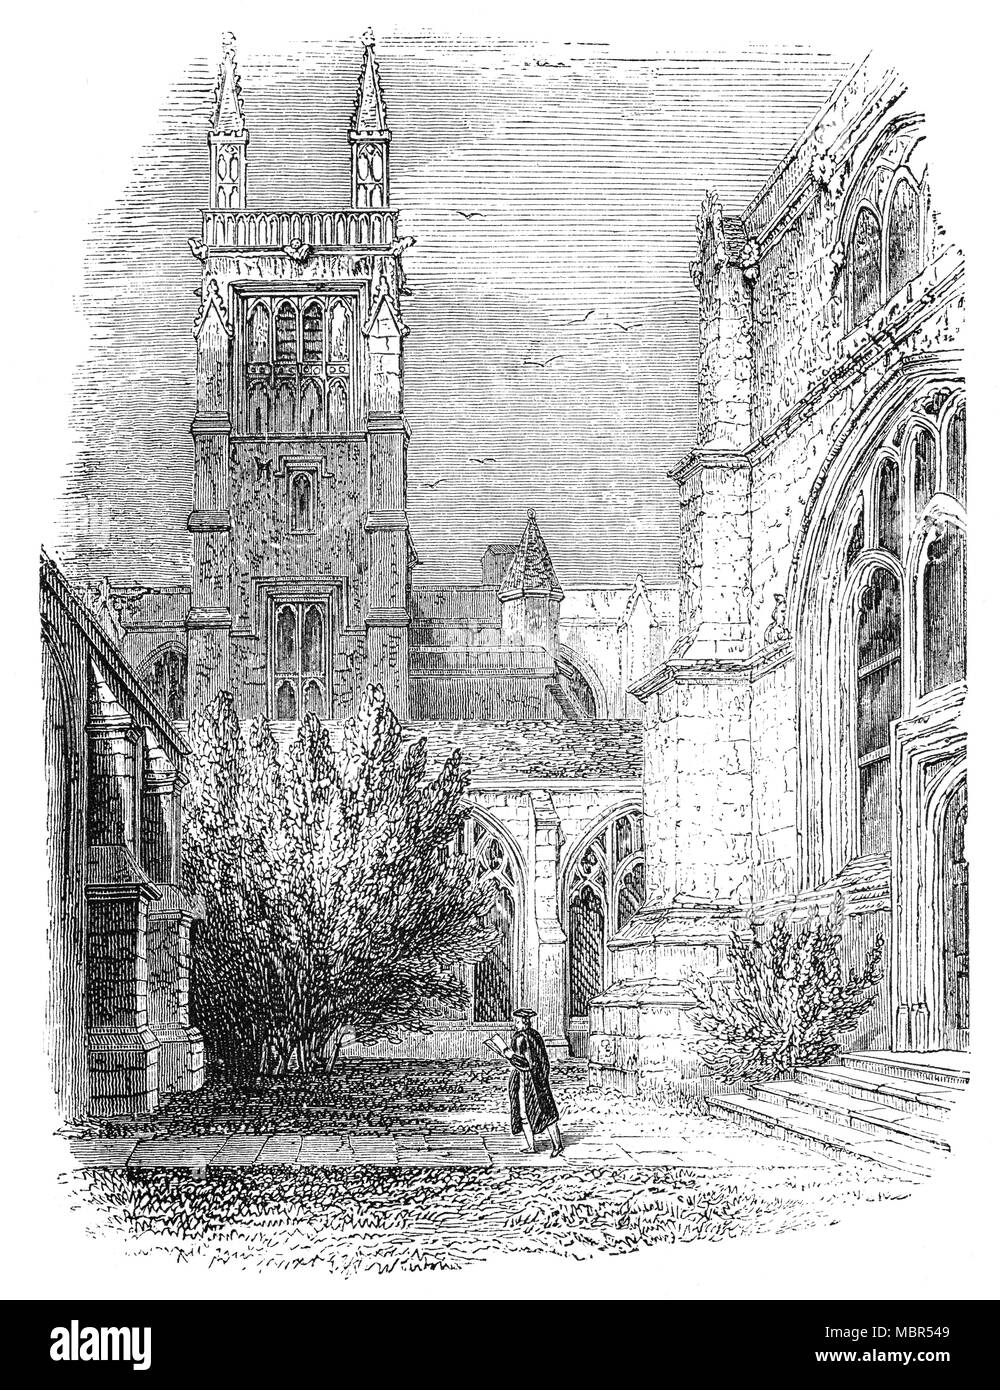 Winchester College in Hampshire, England, war in 1382 durch William von Wykeham, Bischof von Winchester und Bundeskanzler sowohl Edward III und Richard II., und die ersten 70 armen Gelehrten gegründet, um die Schule in 1394 eingetragen. Es wurde in Zusammenarbeit mit New College, Oxford, für die es entworfen wurde, als Anleger: die Gebäude der beiden Hochschulen wurden durch Maurermeister Wilhelm Wynford entworfen zu handeln gegründet. Diese doppelte Stiftung wurde das Modell für Eton College und King's College, Cambridge, 50 Jahre später, und die Westminster School, Christ Church, Oxford, und das Trinity College, Cambridge, in Tudor times. Stockfoto